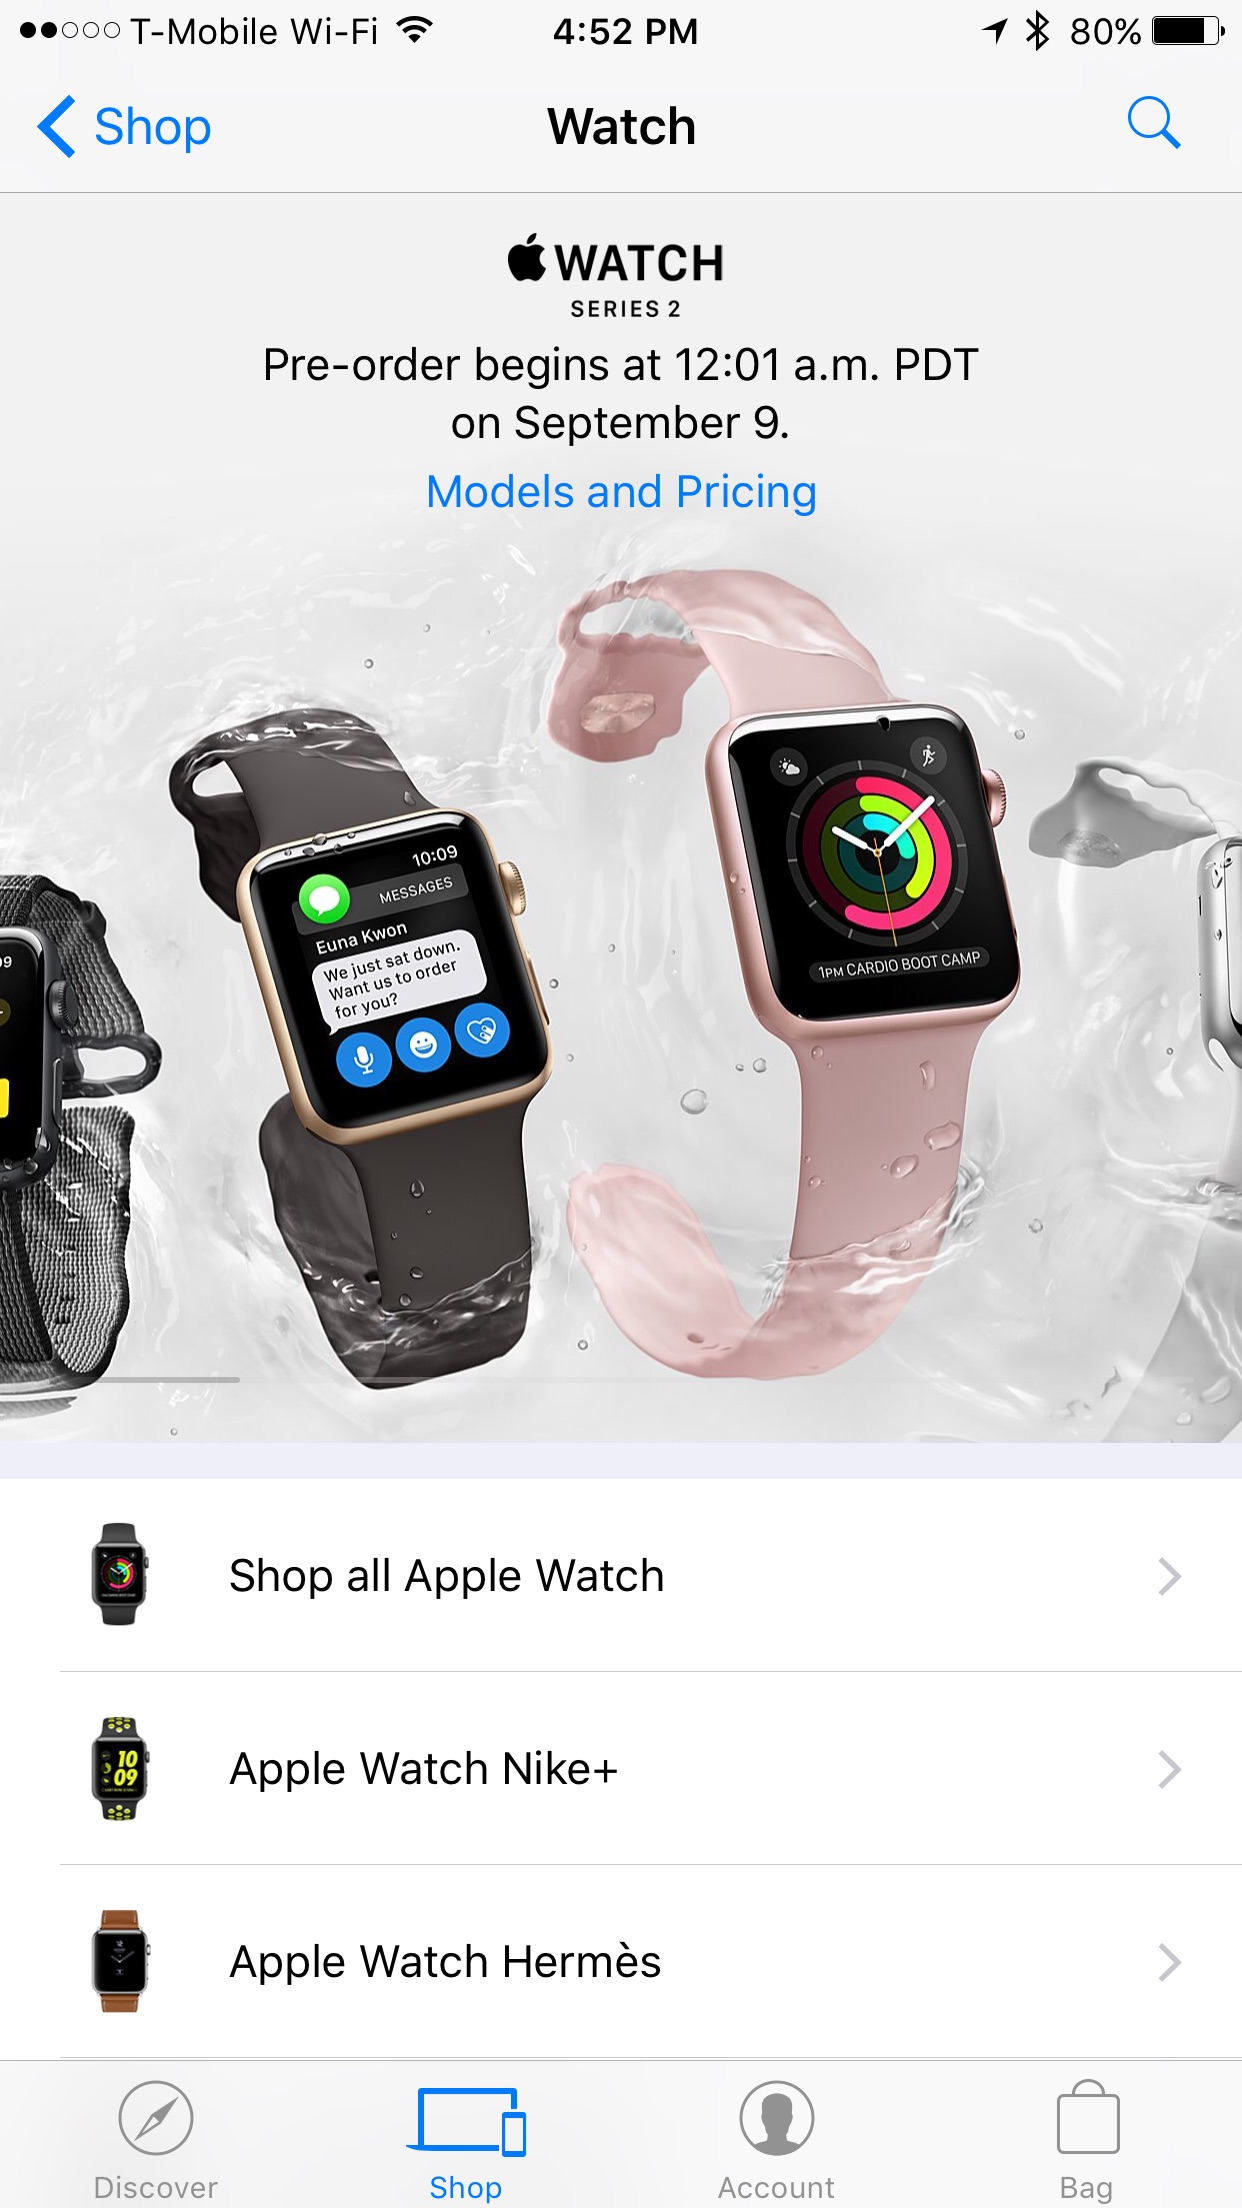 Reserva el nuevo Apple Watch Series 2 a través de la aplicación Apple Store el 9 de septiembre a las 12:01 am PDT.